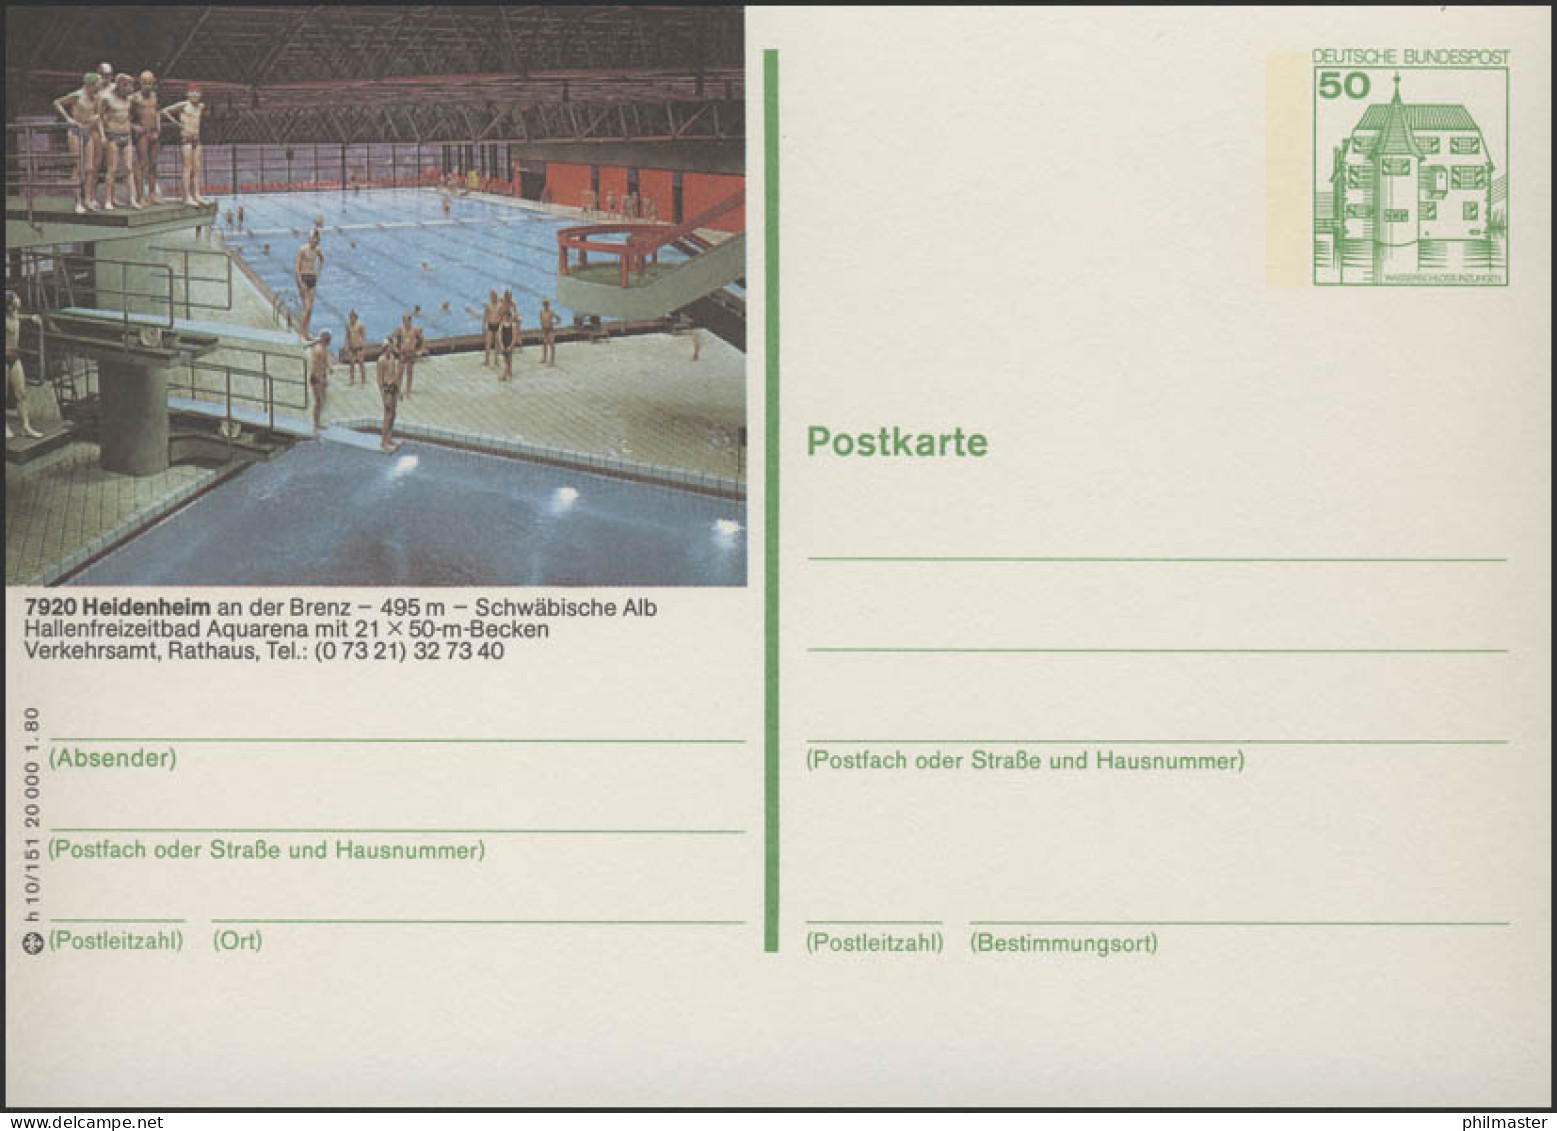 P130-h10/151 - 7920 Heidenheim, Hallenfreizeitbad ** - Illustrated Postcards - Mint